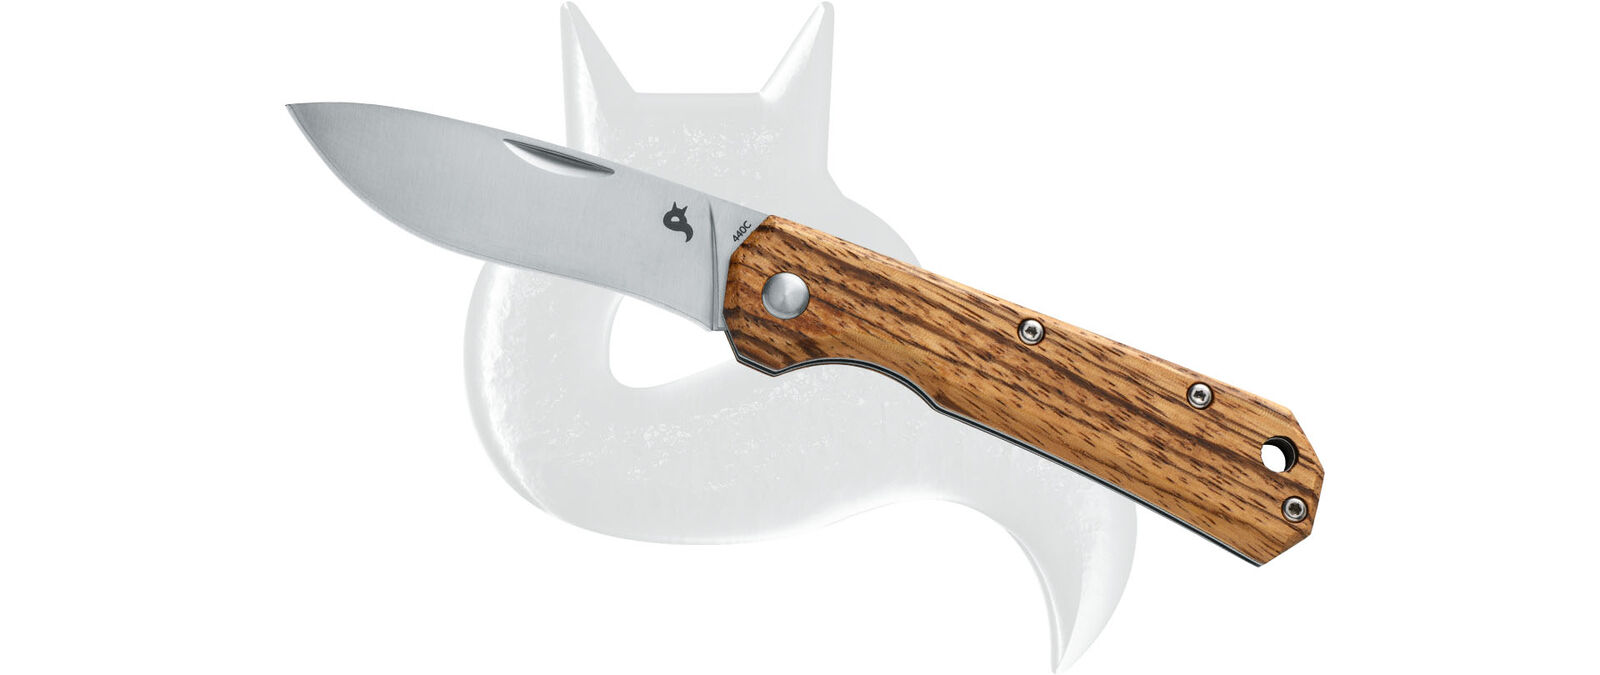 Black Fox Knives Coil Slipjoint Zebra Wood 440C Stainless BF-748ZW Pocket Knife